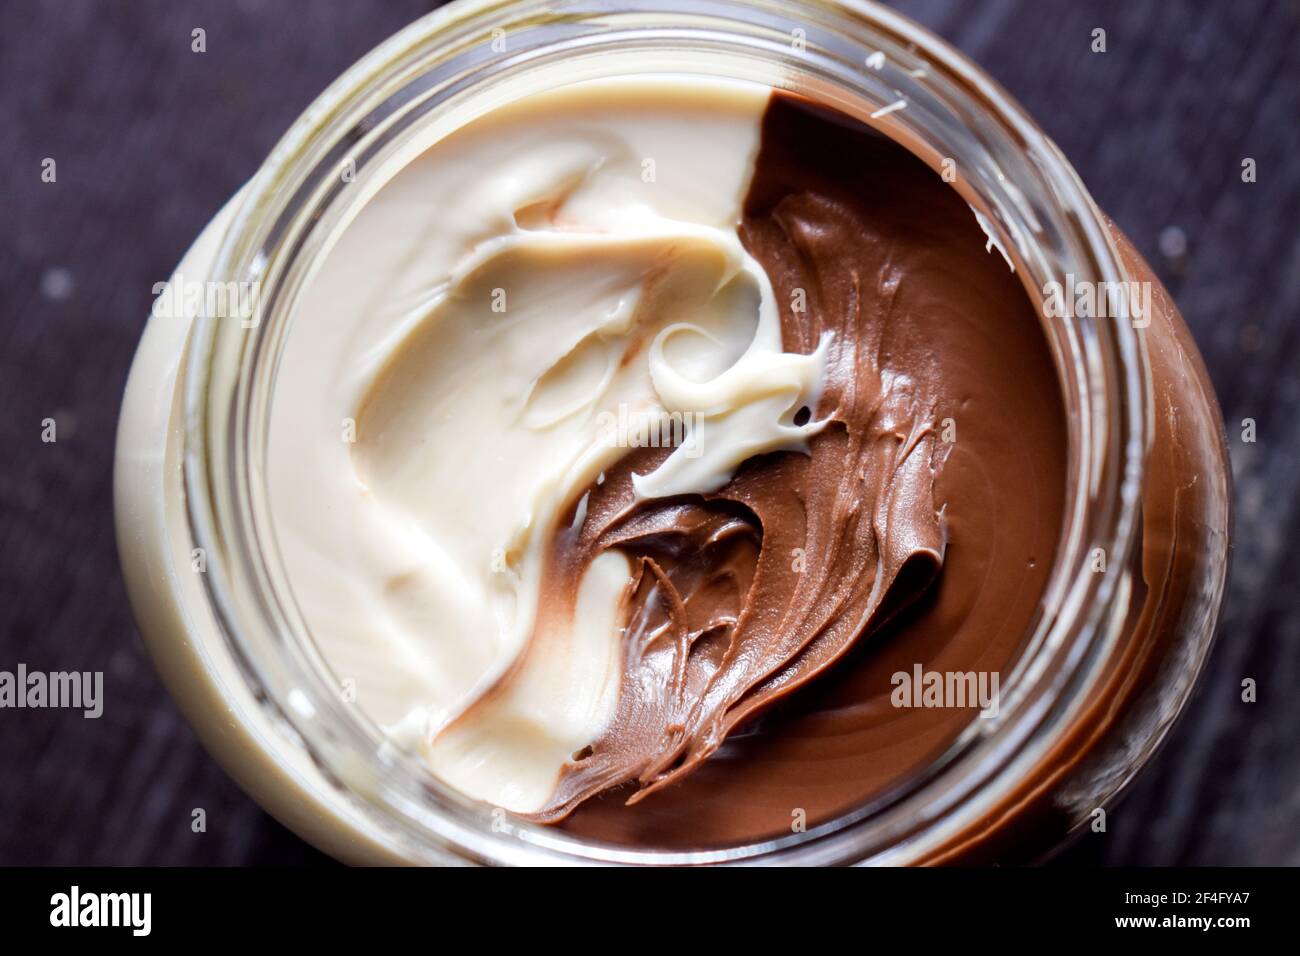 Braune und weiße Schokolade in einem Glas in der Nähe aufstreuen  Stockfotografie - Alamy